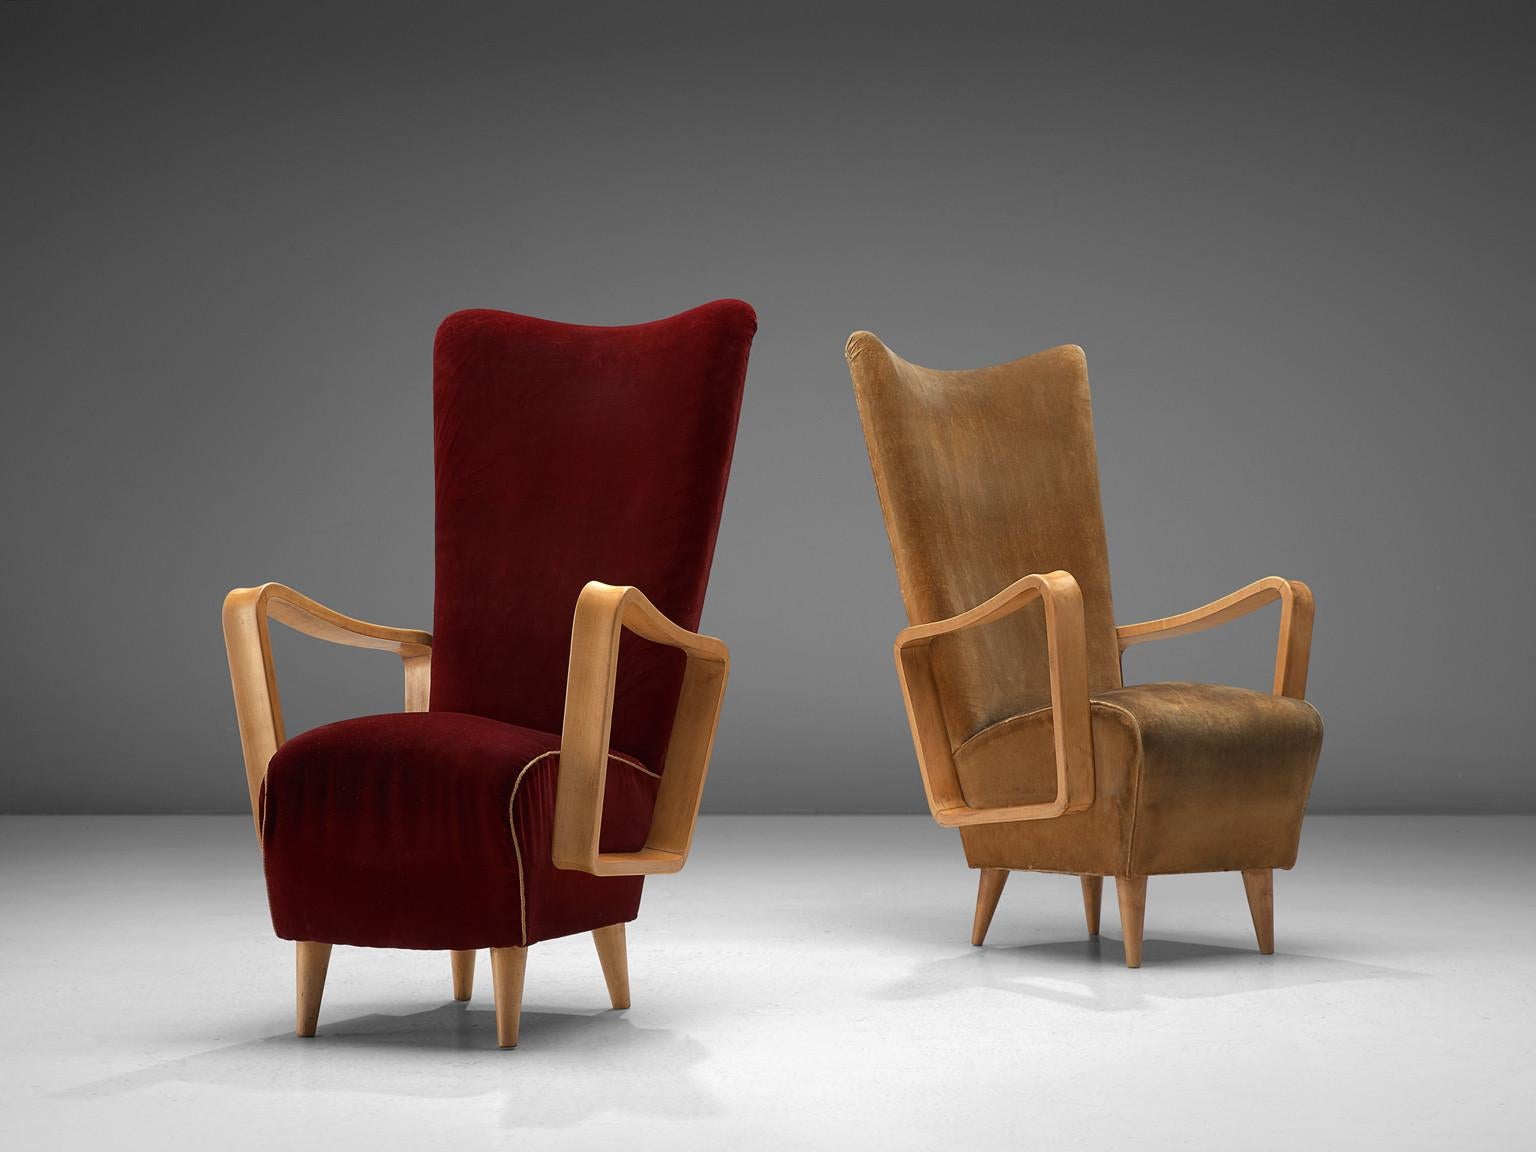 Pietro Lingeri, Paar Sessel, Buche, Samtpolsterung, Italien, 1950er Jahre

Dieses Paar Sessel mit hoher Rückenlehne hat einen eleganten Charakter. Schön geschwungene und doch scharf gerundete Kanten sorgen für ein ganz besonderes Erscheinungsbild.